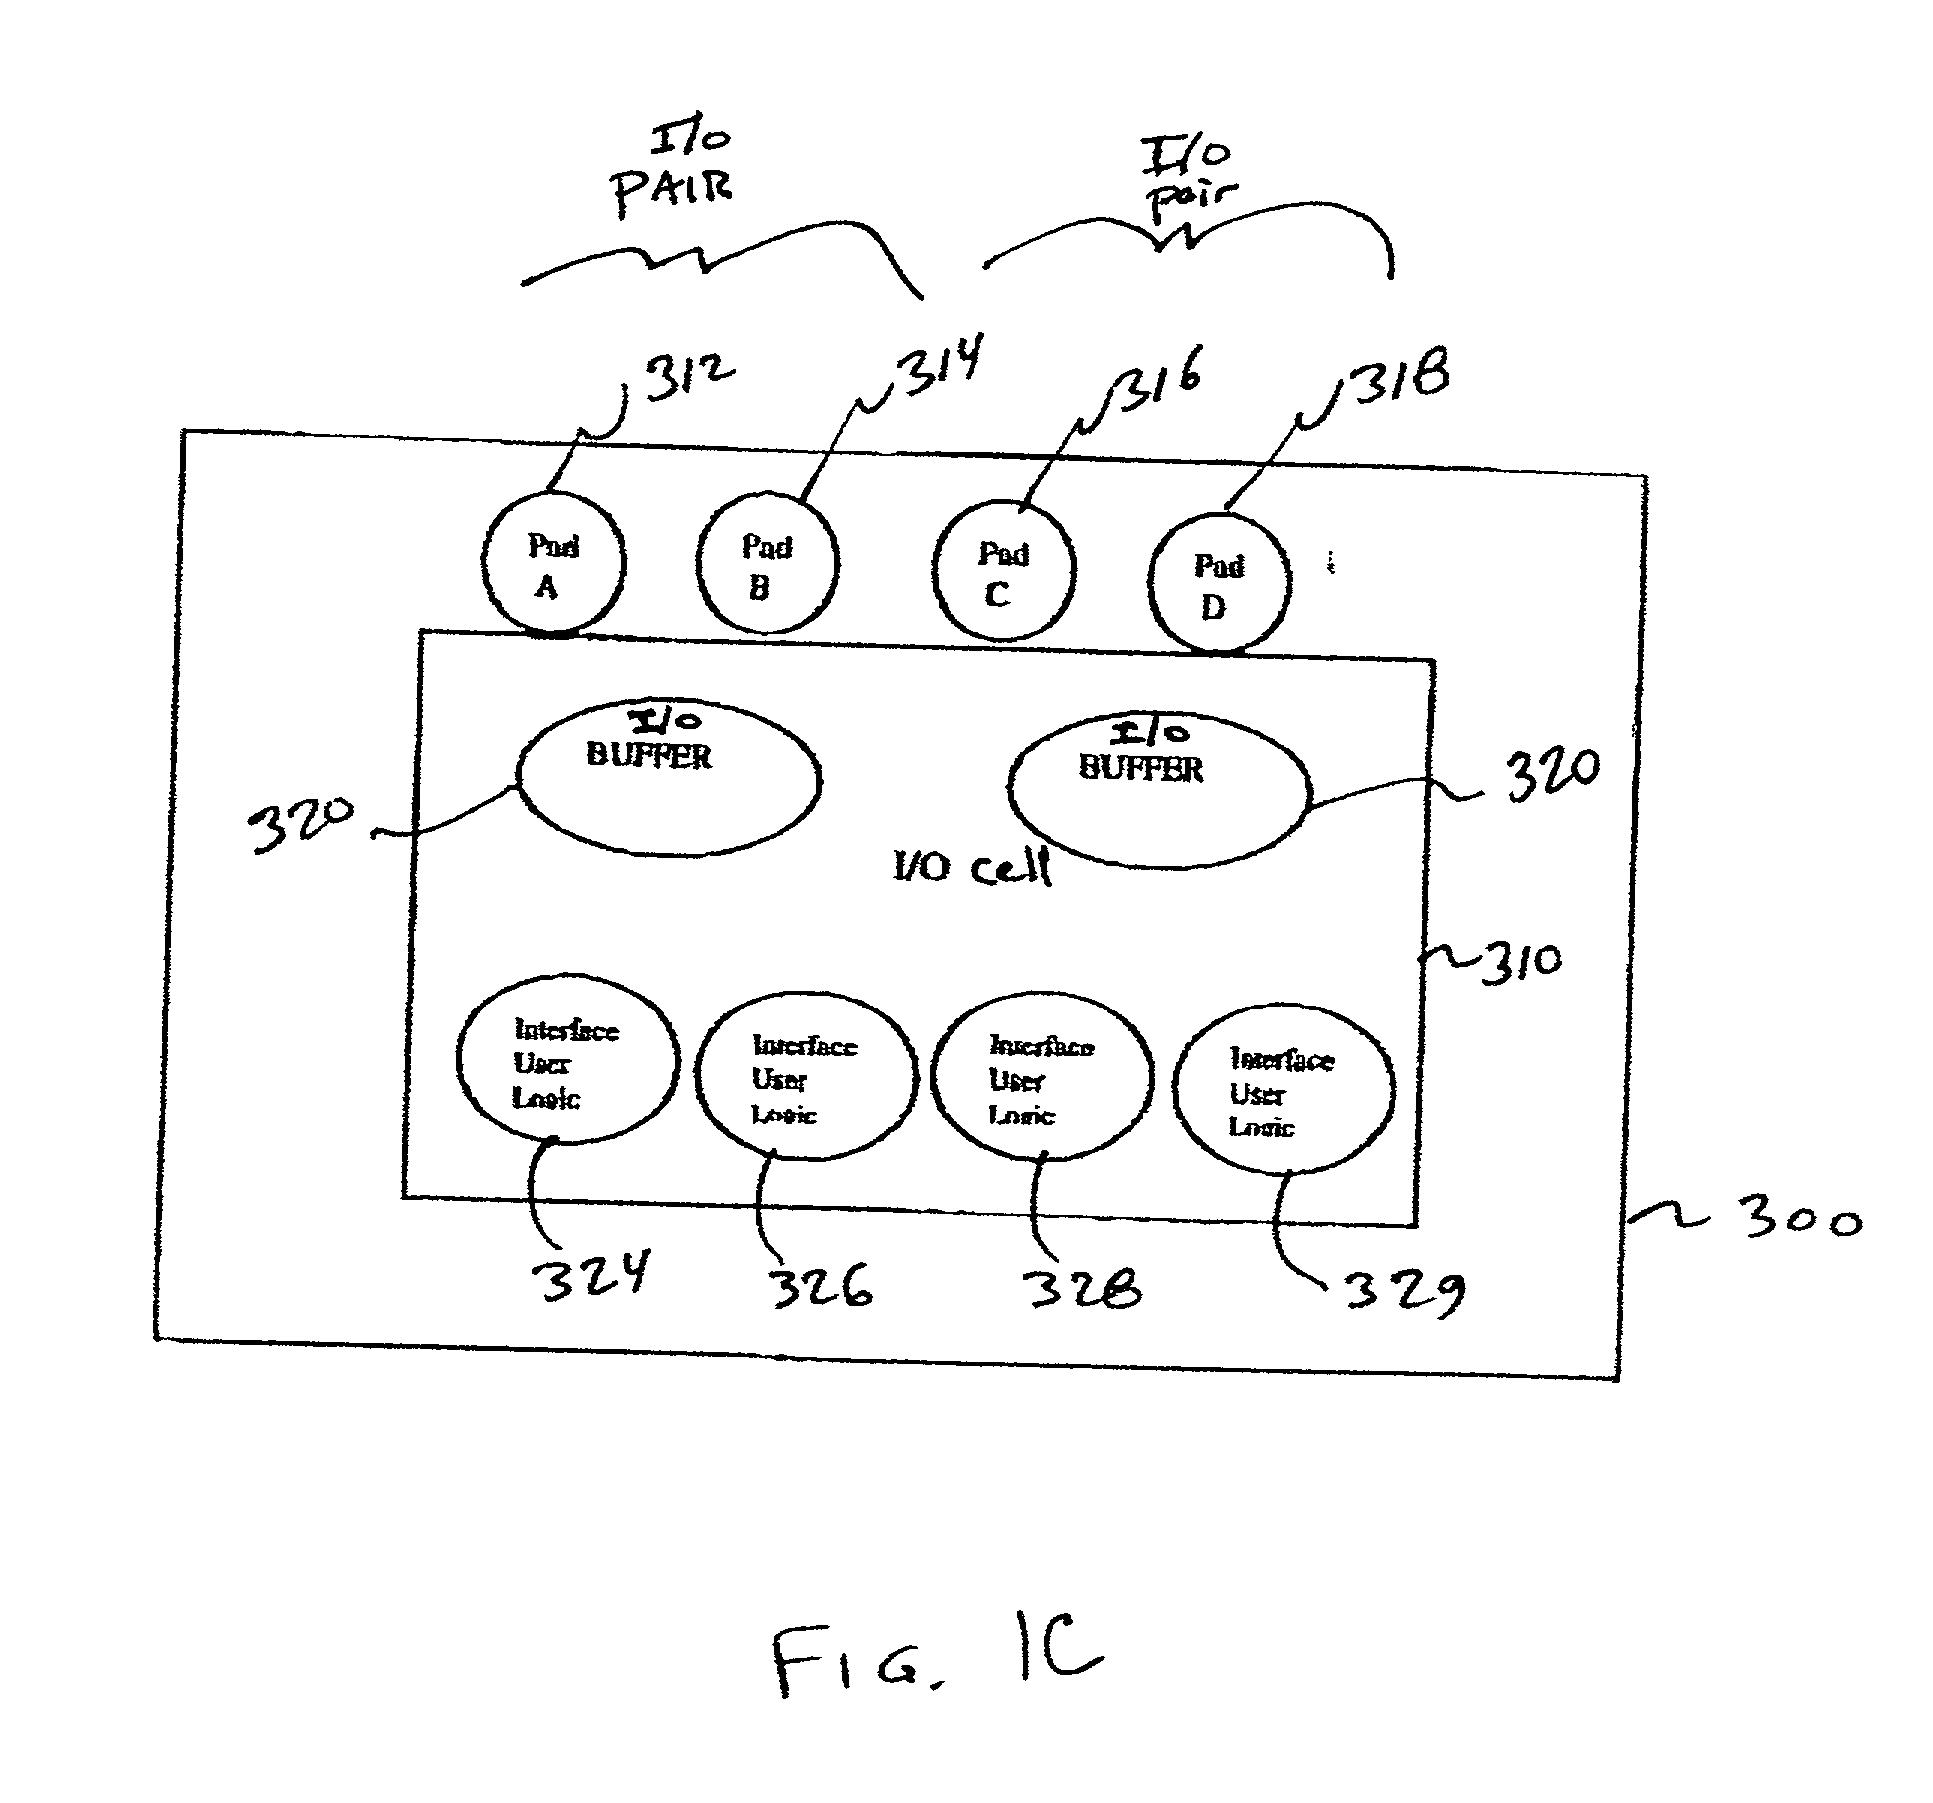 Multi-functional I/O buffers in a field programmable gate array (FPGA)